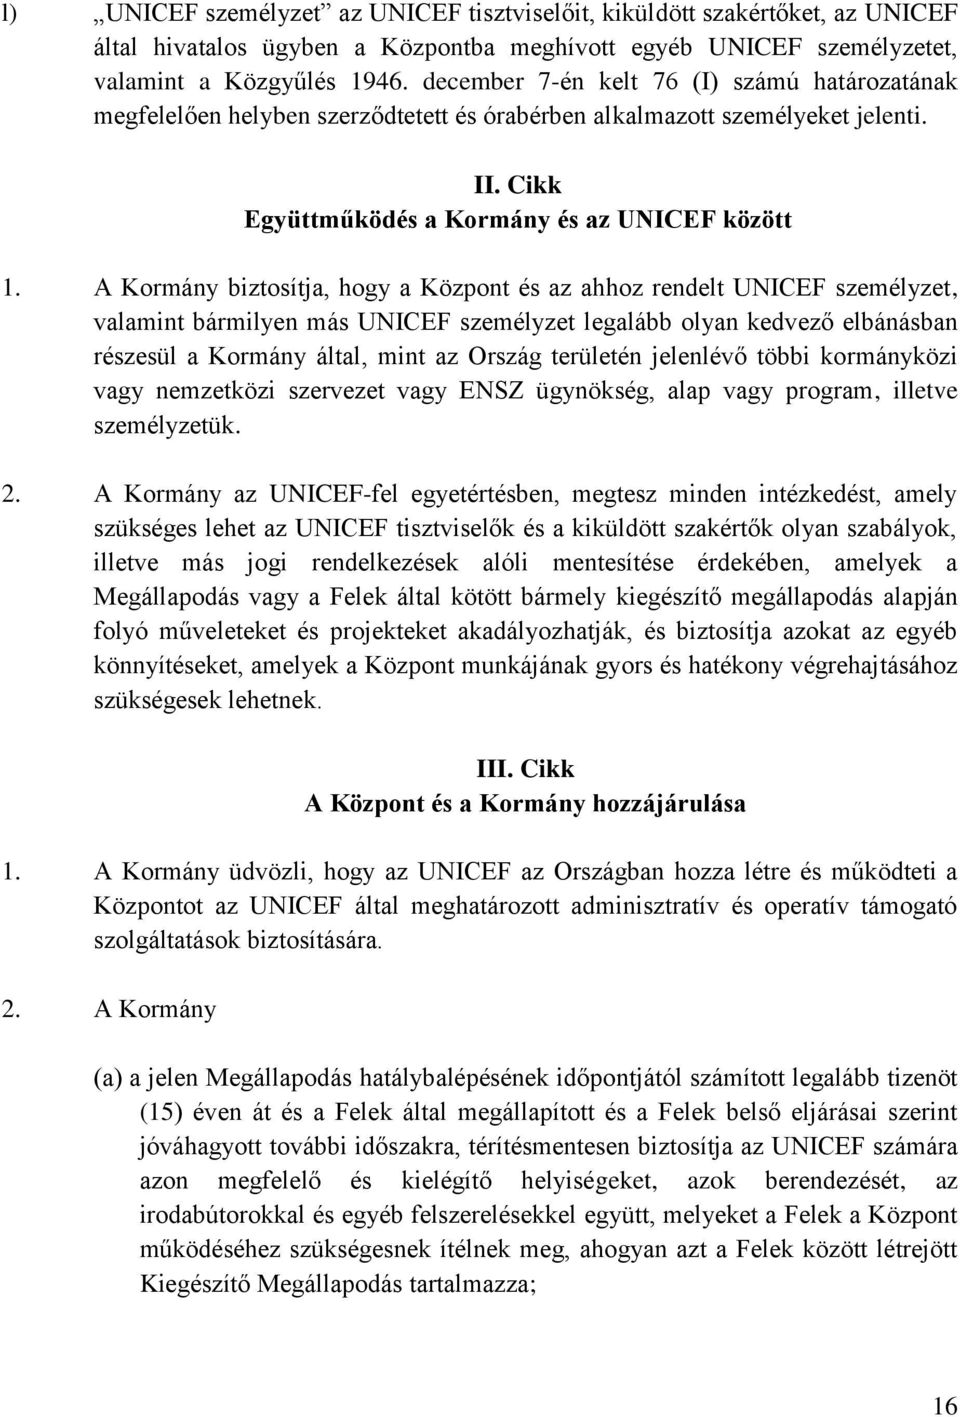 A Kormány biztosítja, hogy a Központ és az ahhoz rendelt UNICEF személyzet, valamint bármilyen más UNICEF személyzet legalább olyan kedvező elbánásban részesül a Kormány által, mint az Ország